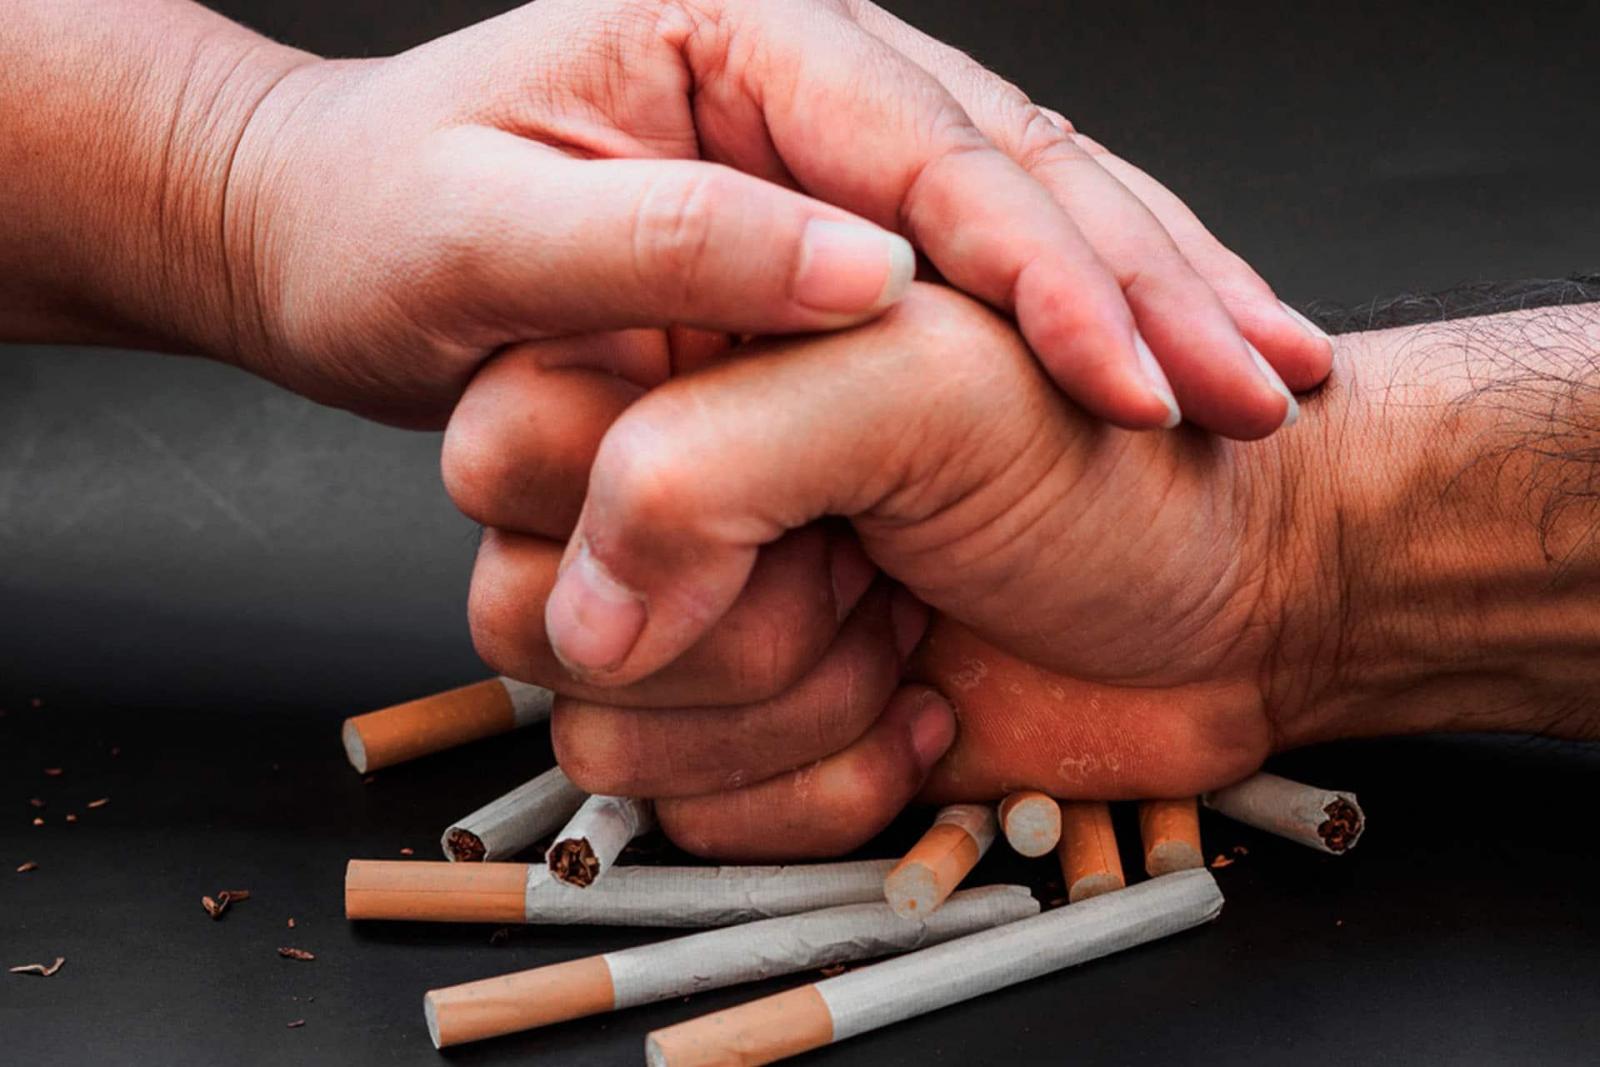 Các phương pháp giúp bỏ thuốc lá phổ biến hiện nay là gì?